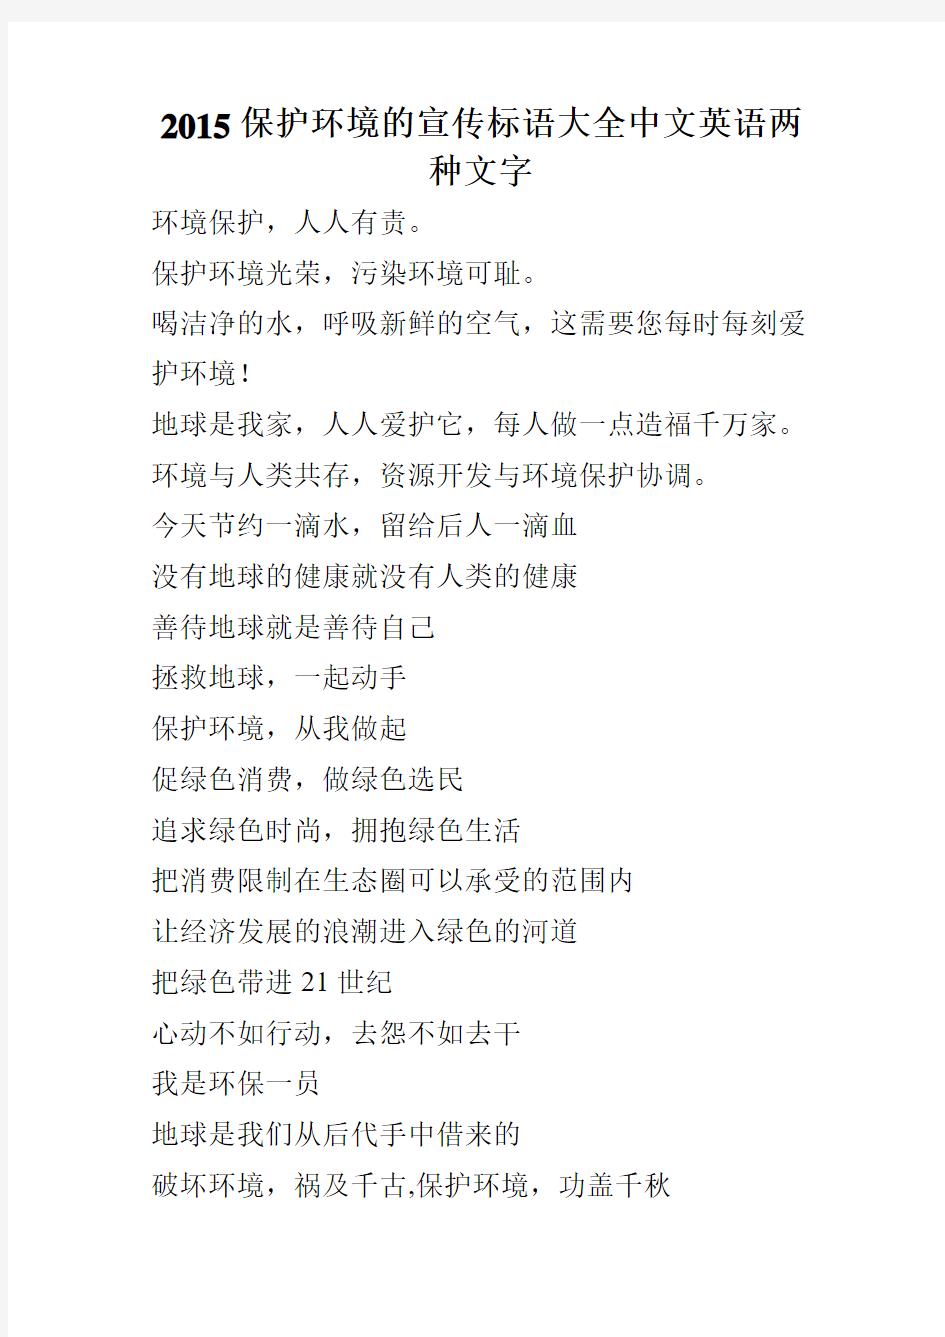 2015保护环境的宣传标语大全中文英语两种文字